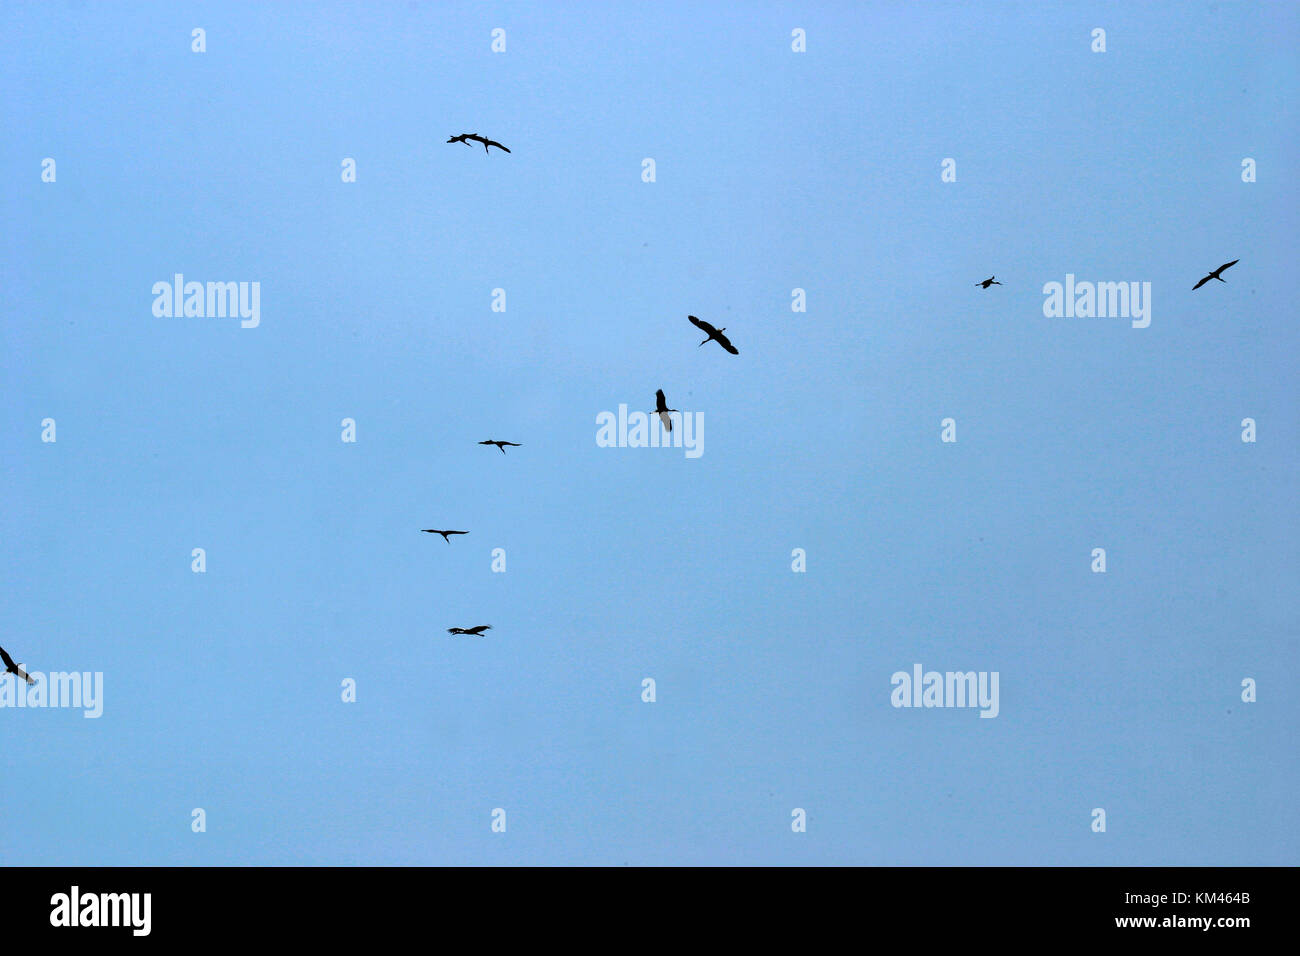 Storks soaring in the sky Stock Photo